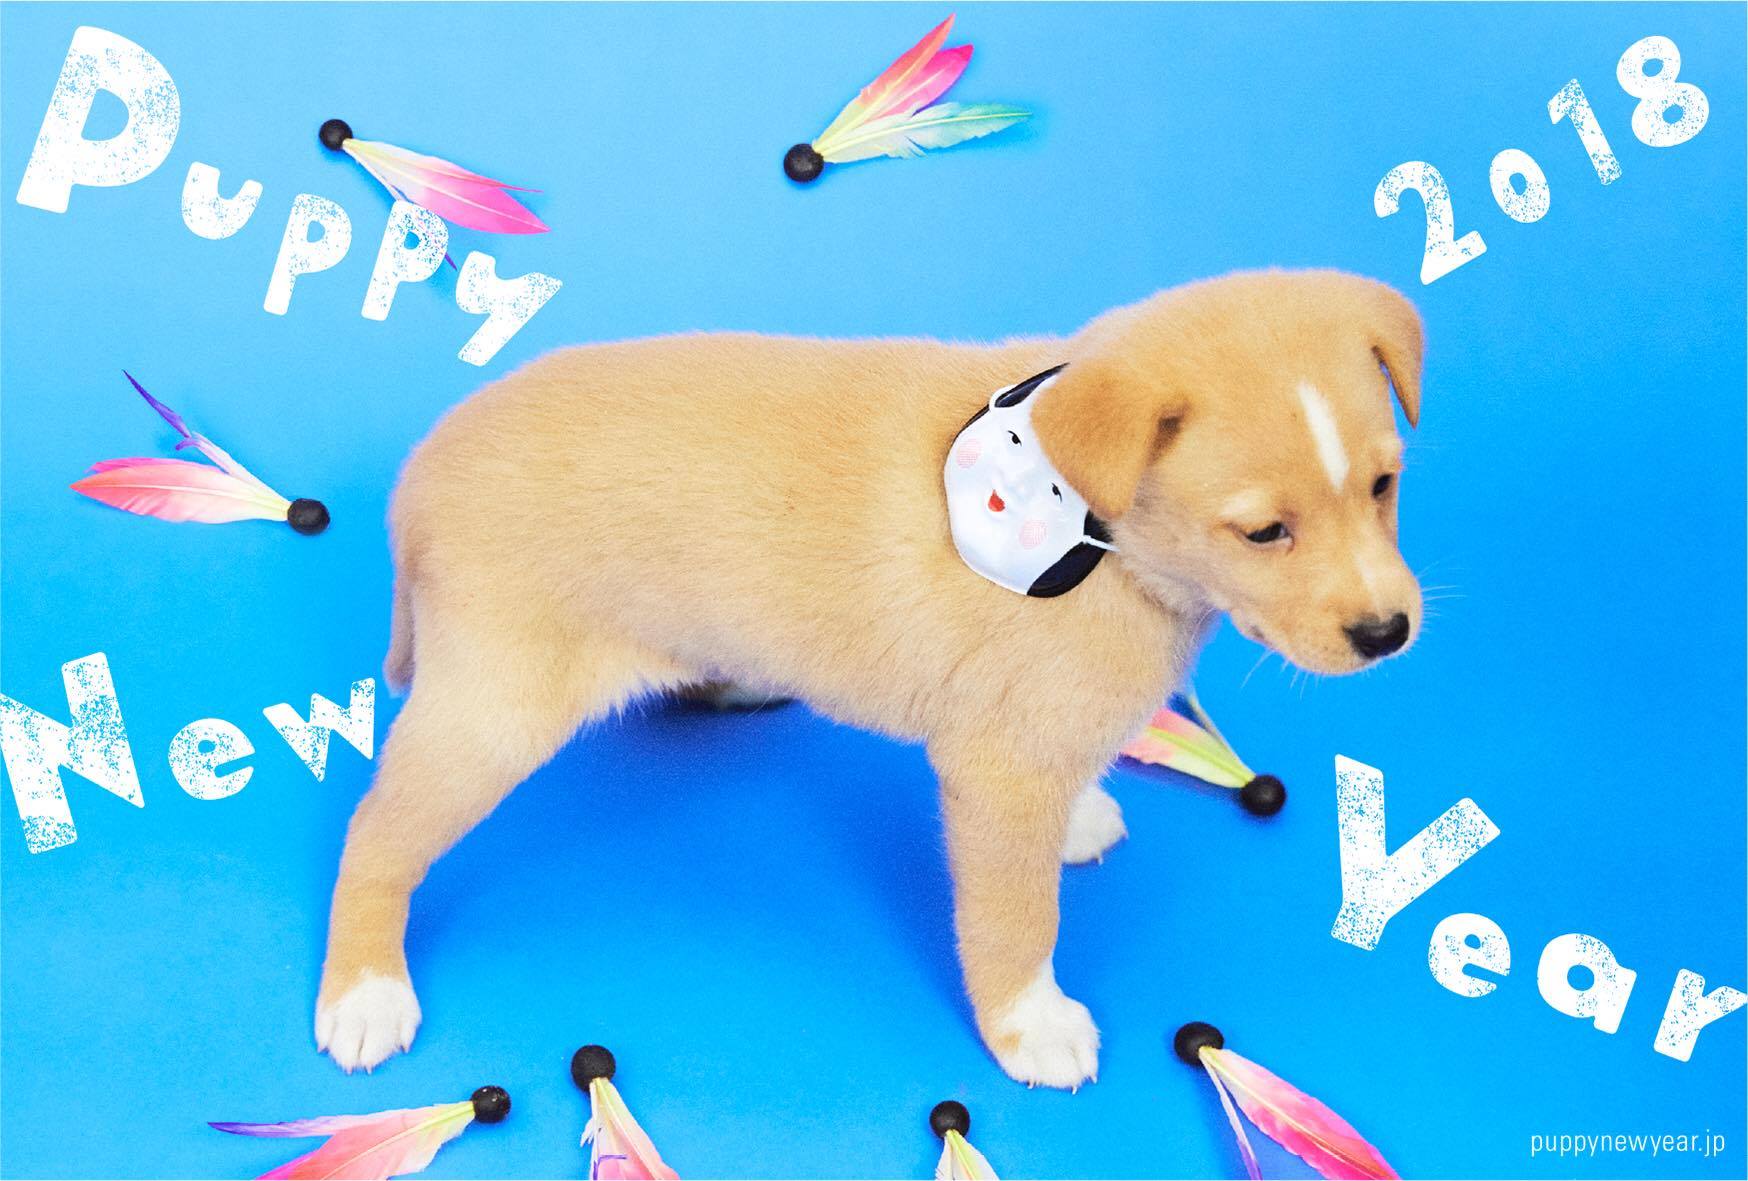 年賀状で里親探しのお手伝い 保護犬がモデルのフリーデザイン年賀状サイトで人間もワンちゃんもハッピーに Pouch ポーチ